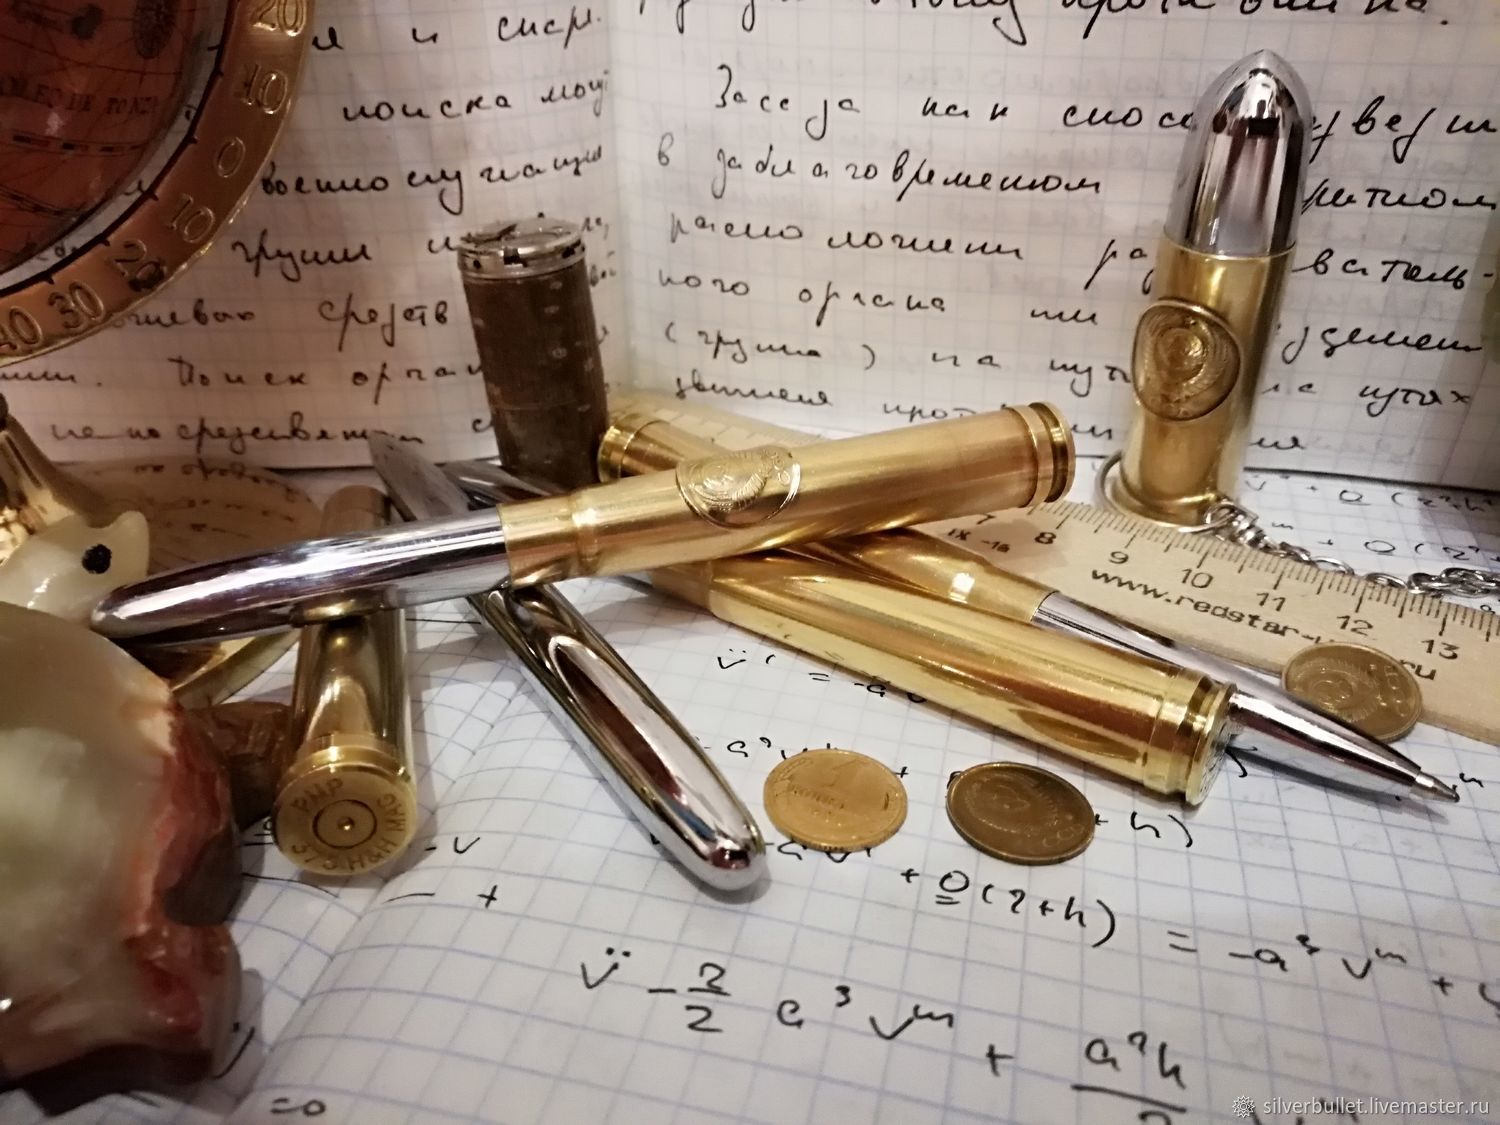 Подарочный набор Шариковая ручка Патрон с затвором, из гильзы/Подарок военному боссу руководителю